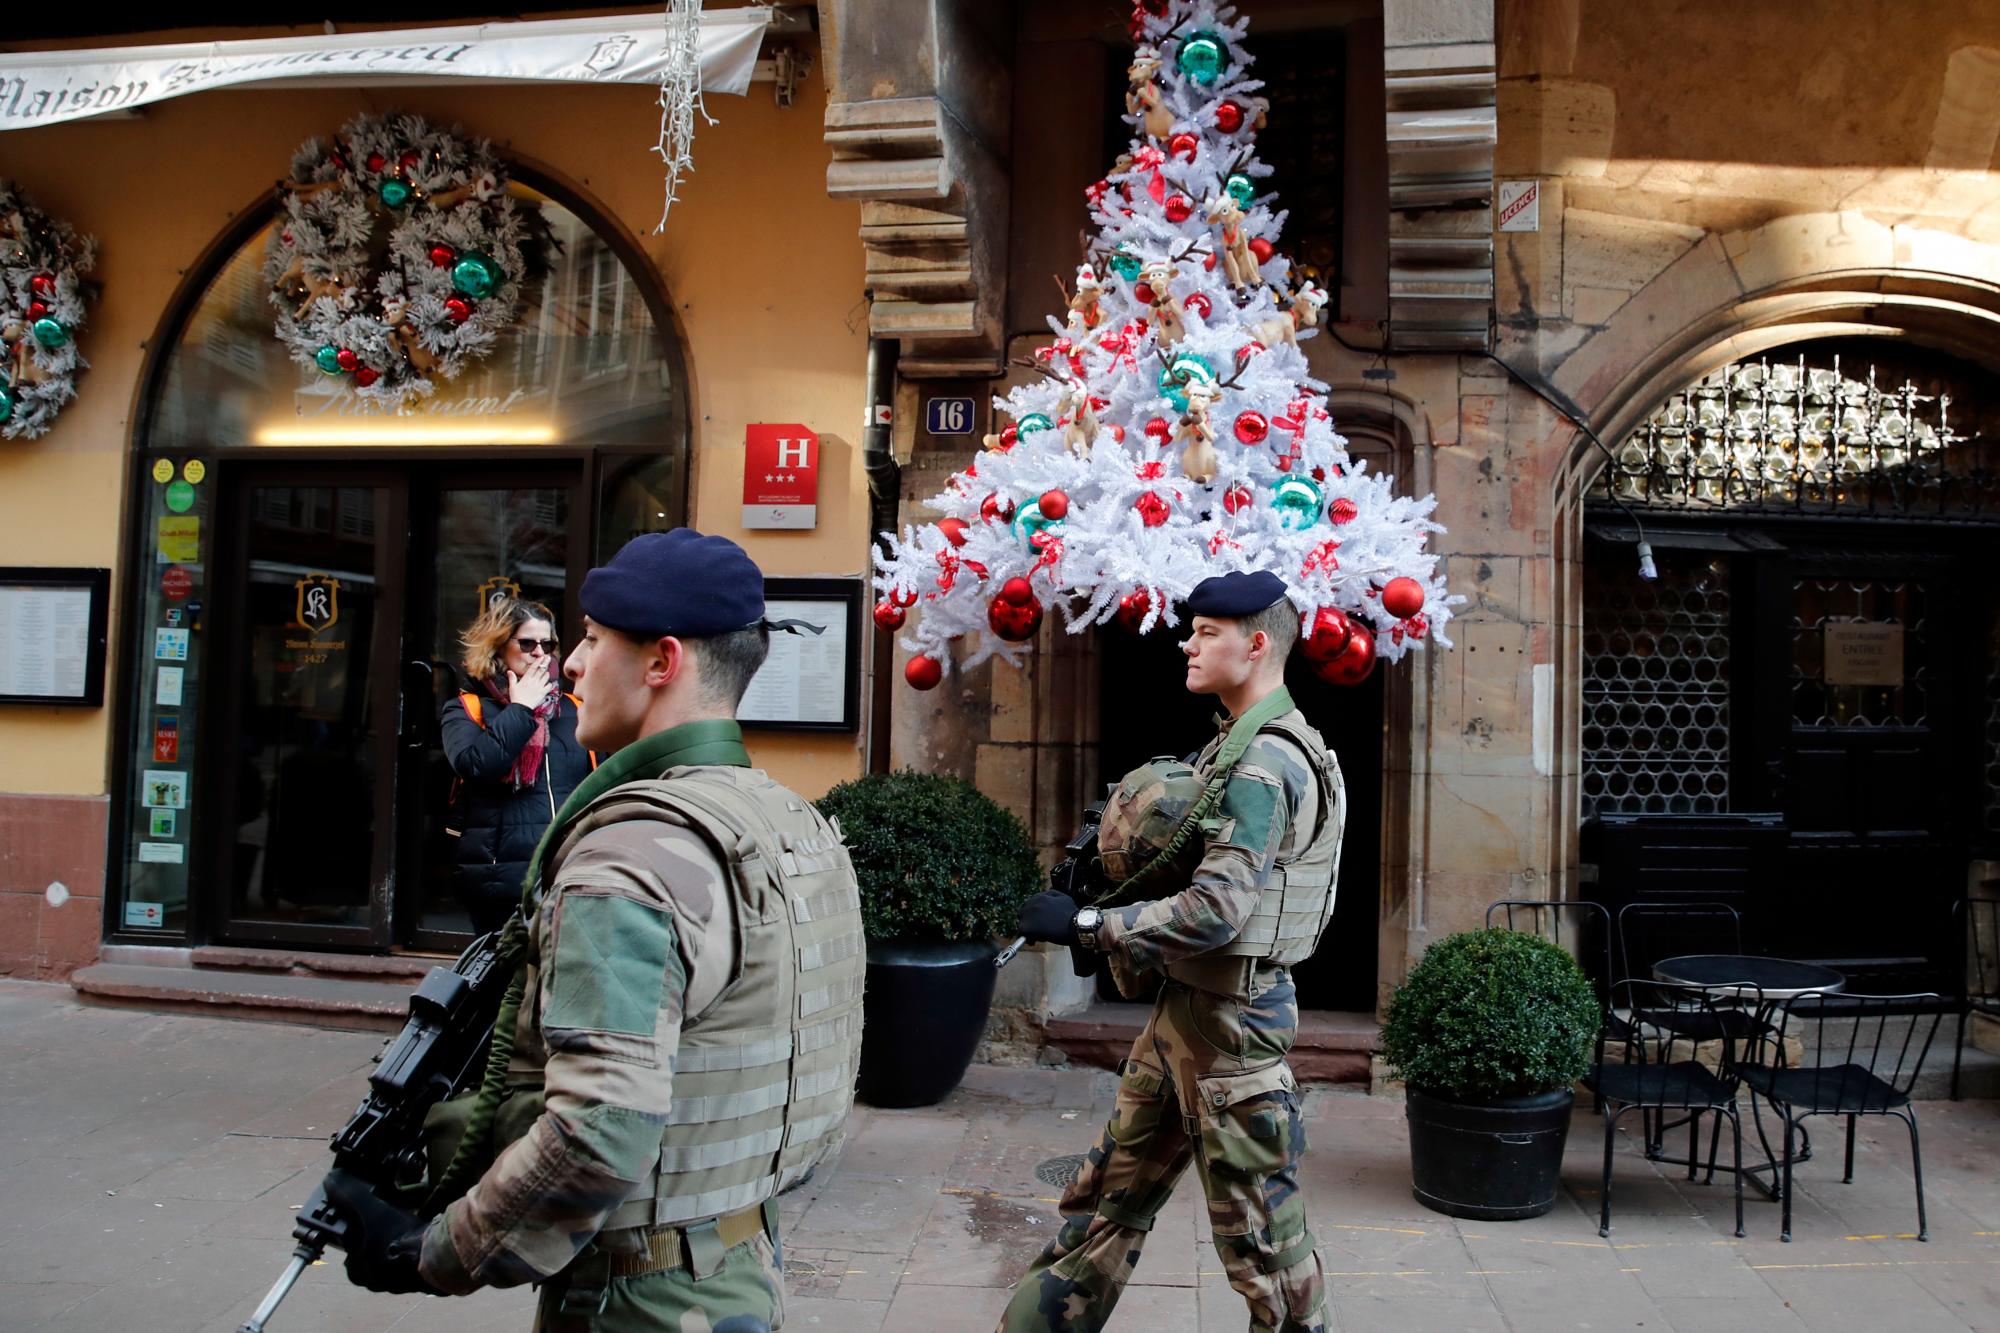 Las fuerzas de seguridad francesas están tratando de capturar al presunto pistolero de Estrasburgo muerto o vivo